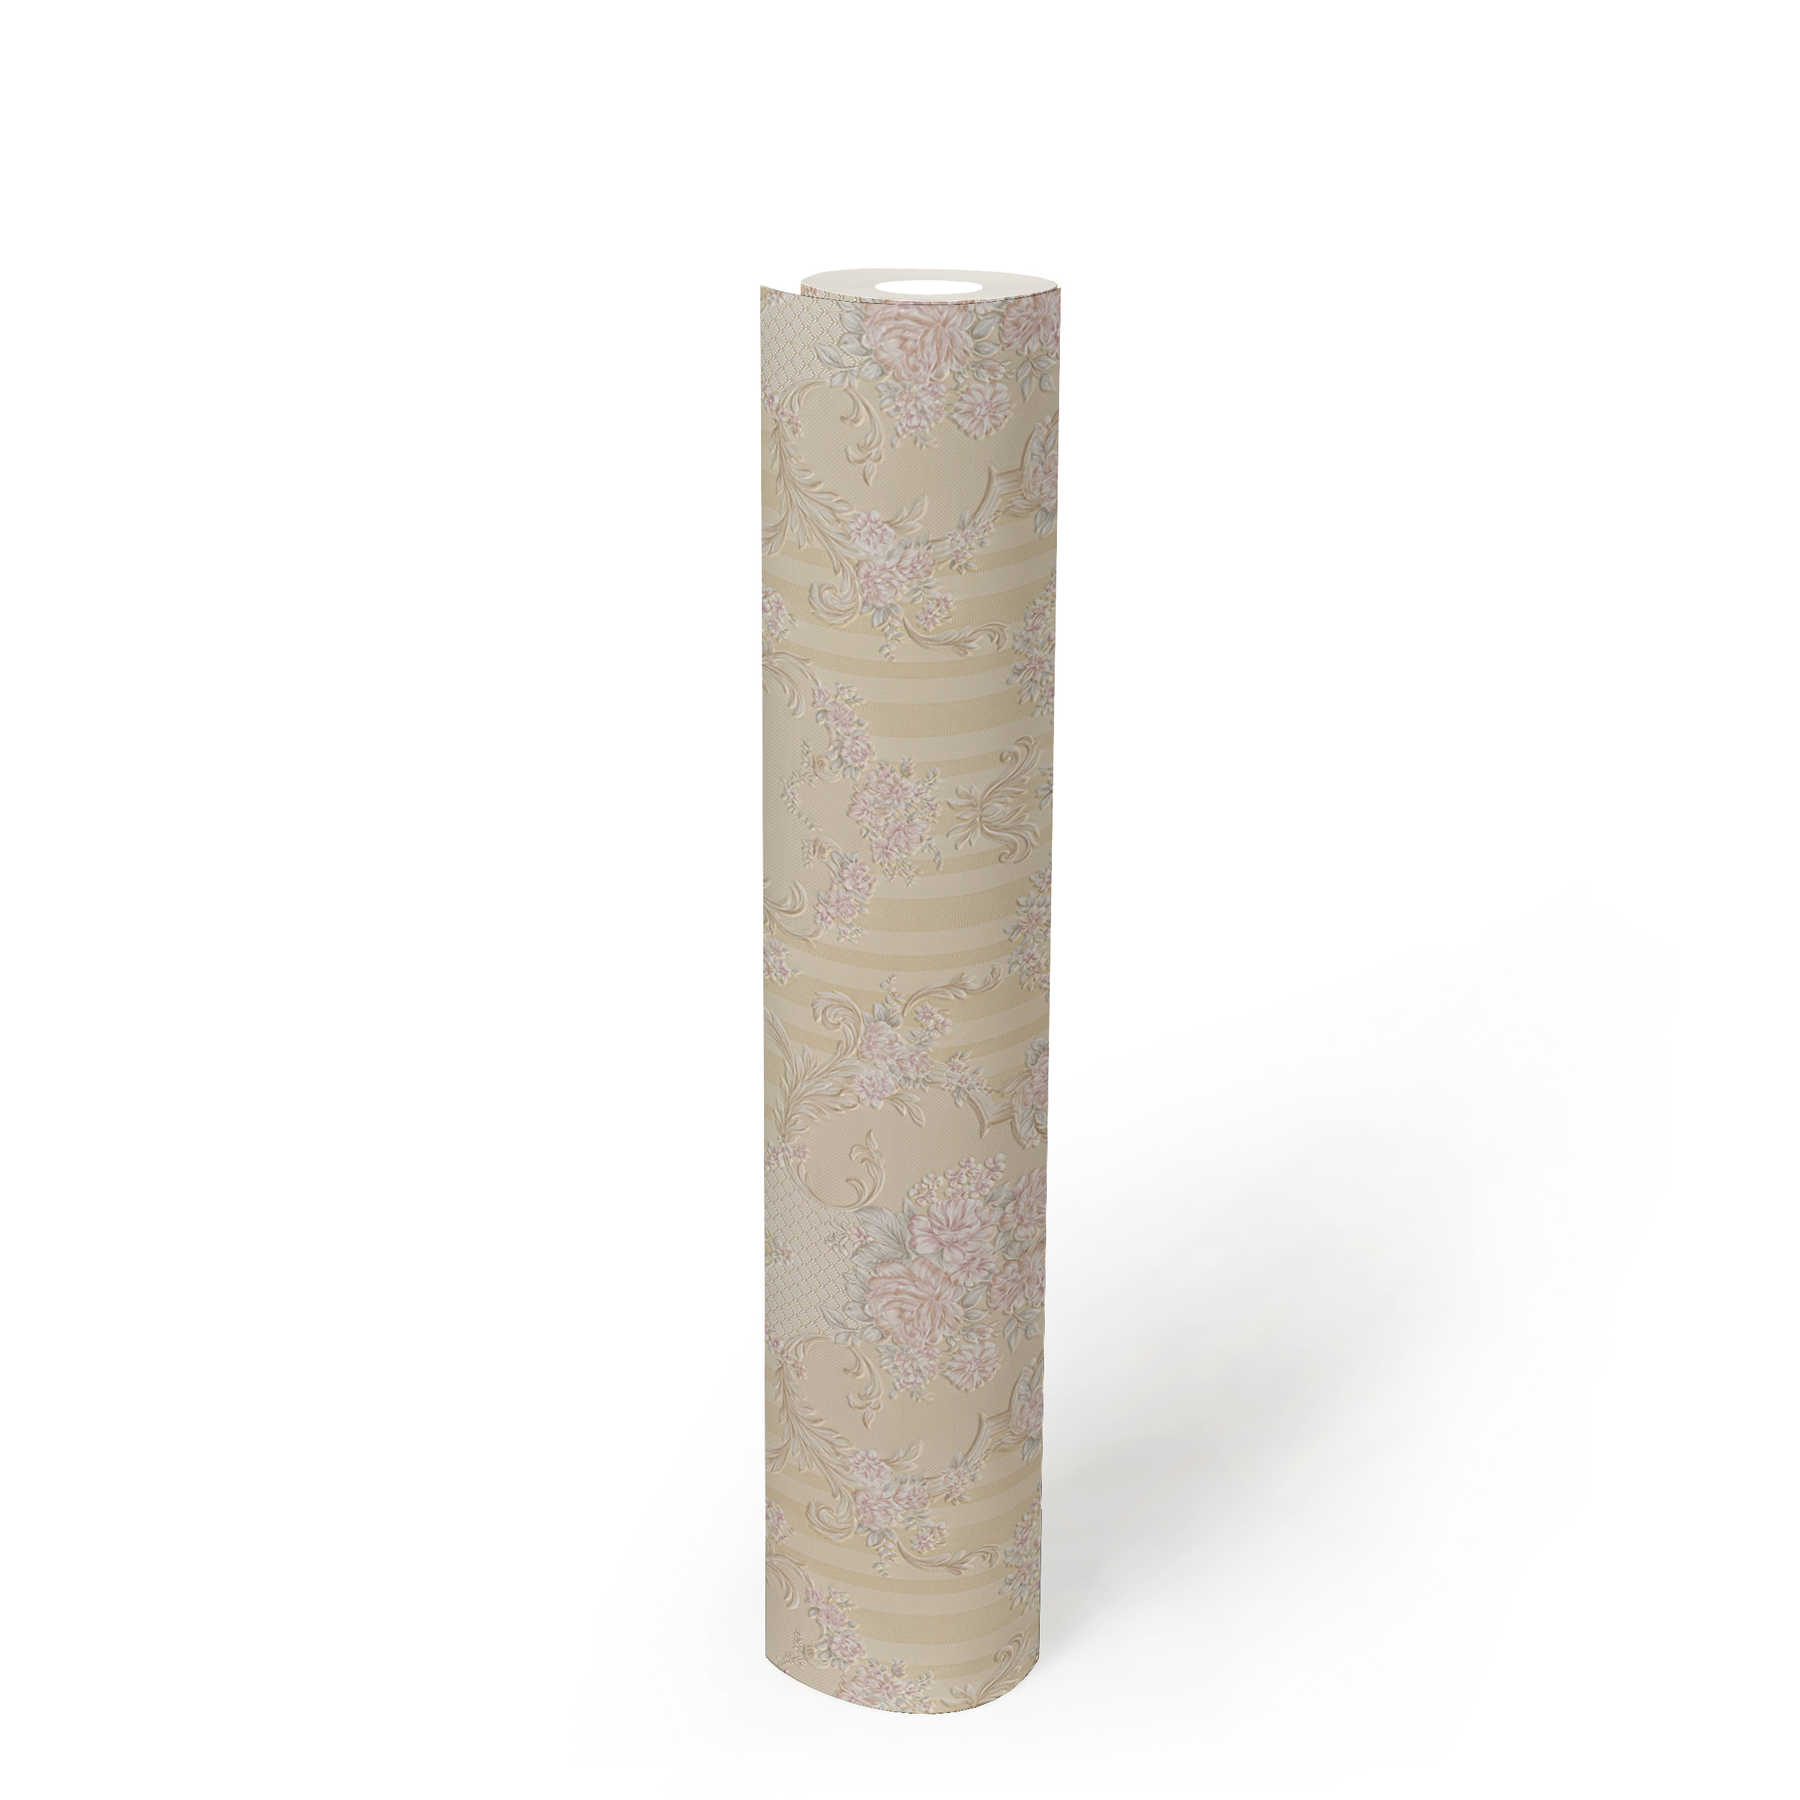             Papel pintado neobarroco con adornos de rosas y rayas - Beige, metálico
        